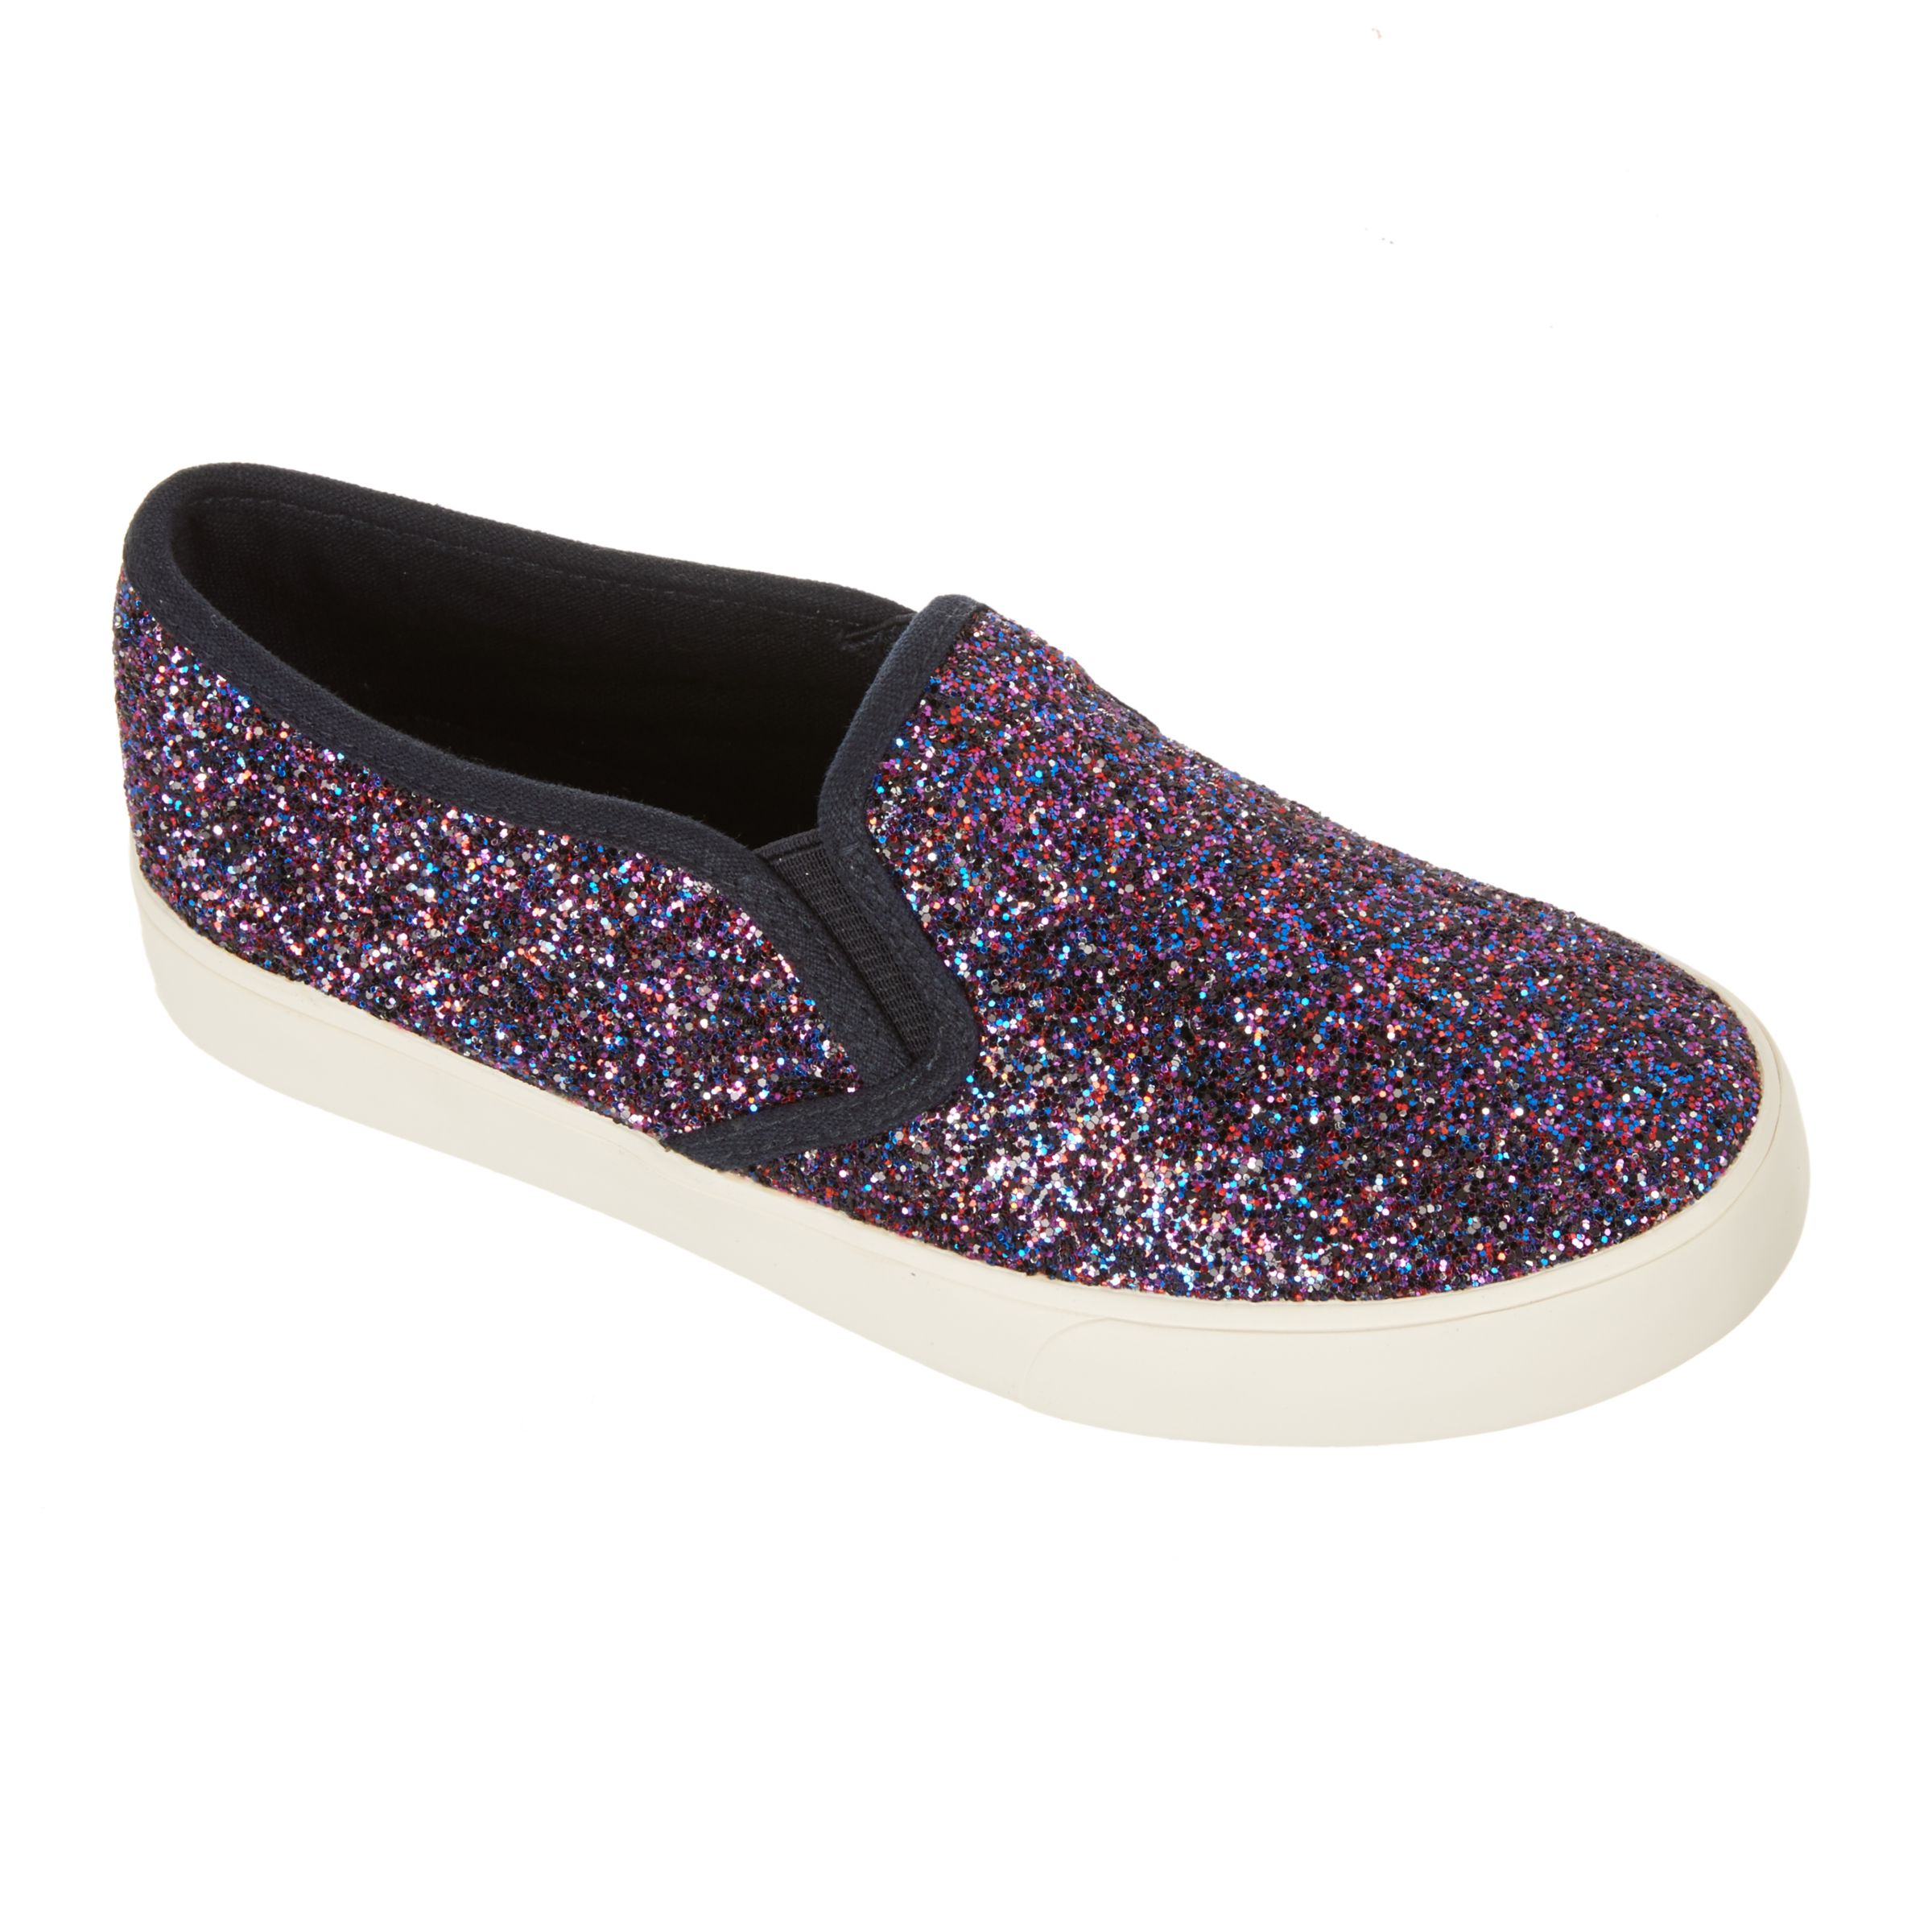 John Lewis & Partners Children's Pheobe Glitter Slip On Shoes, Purple, 8 Jnr